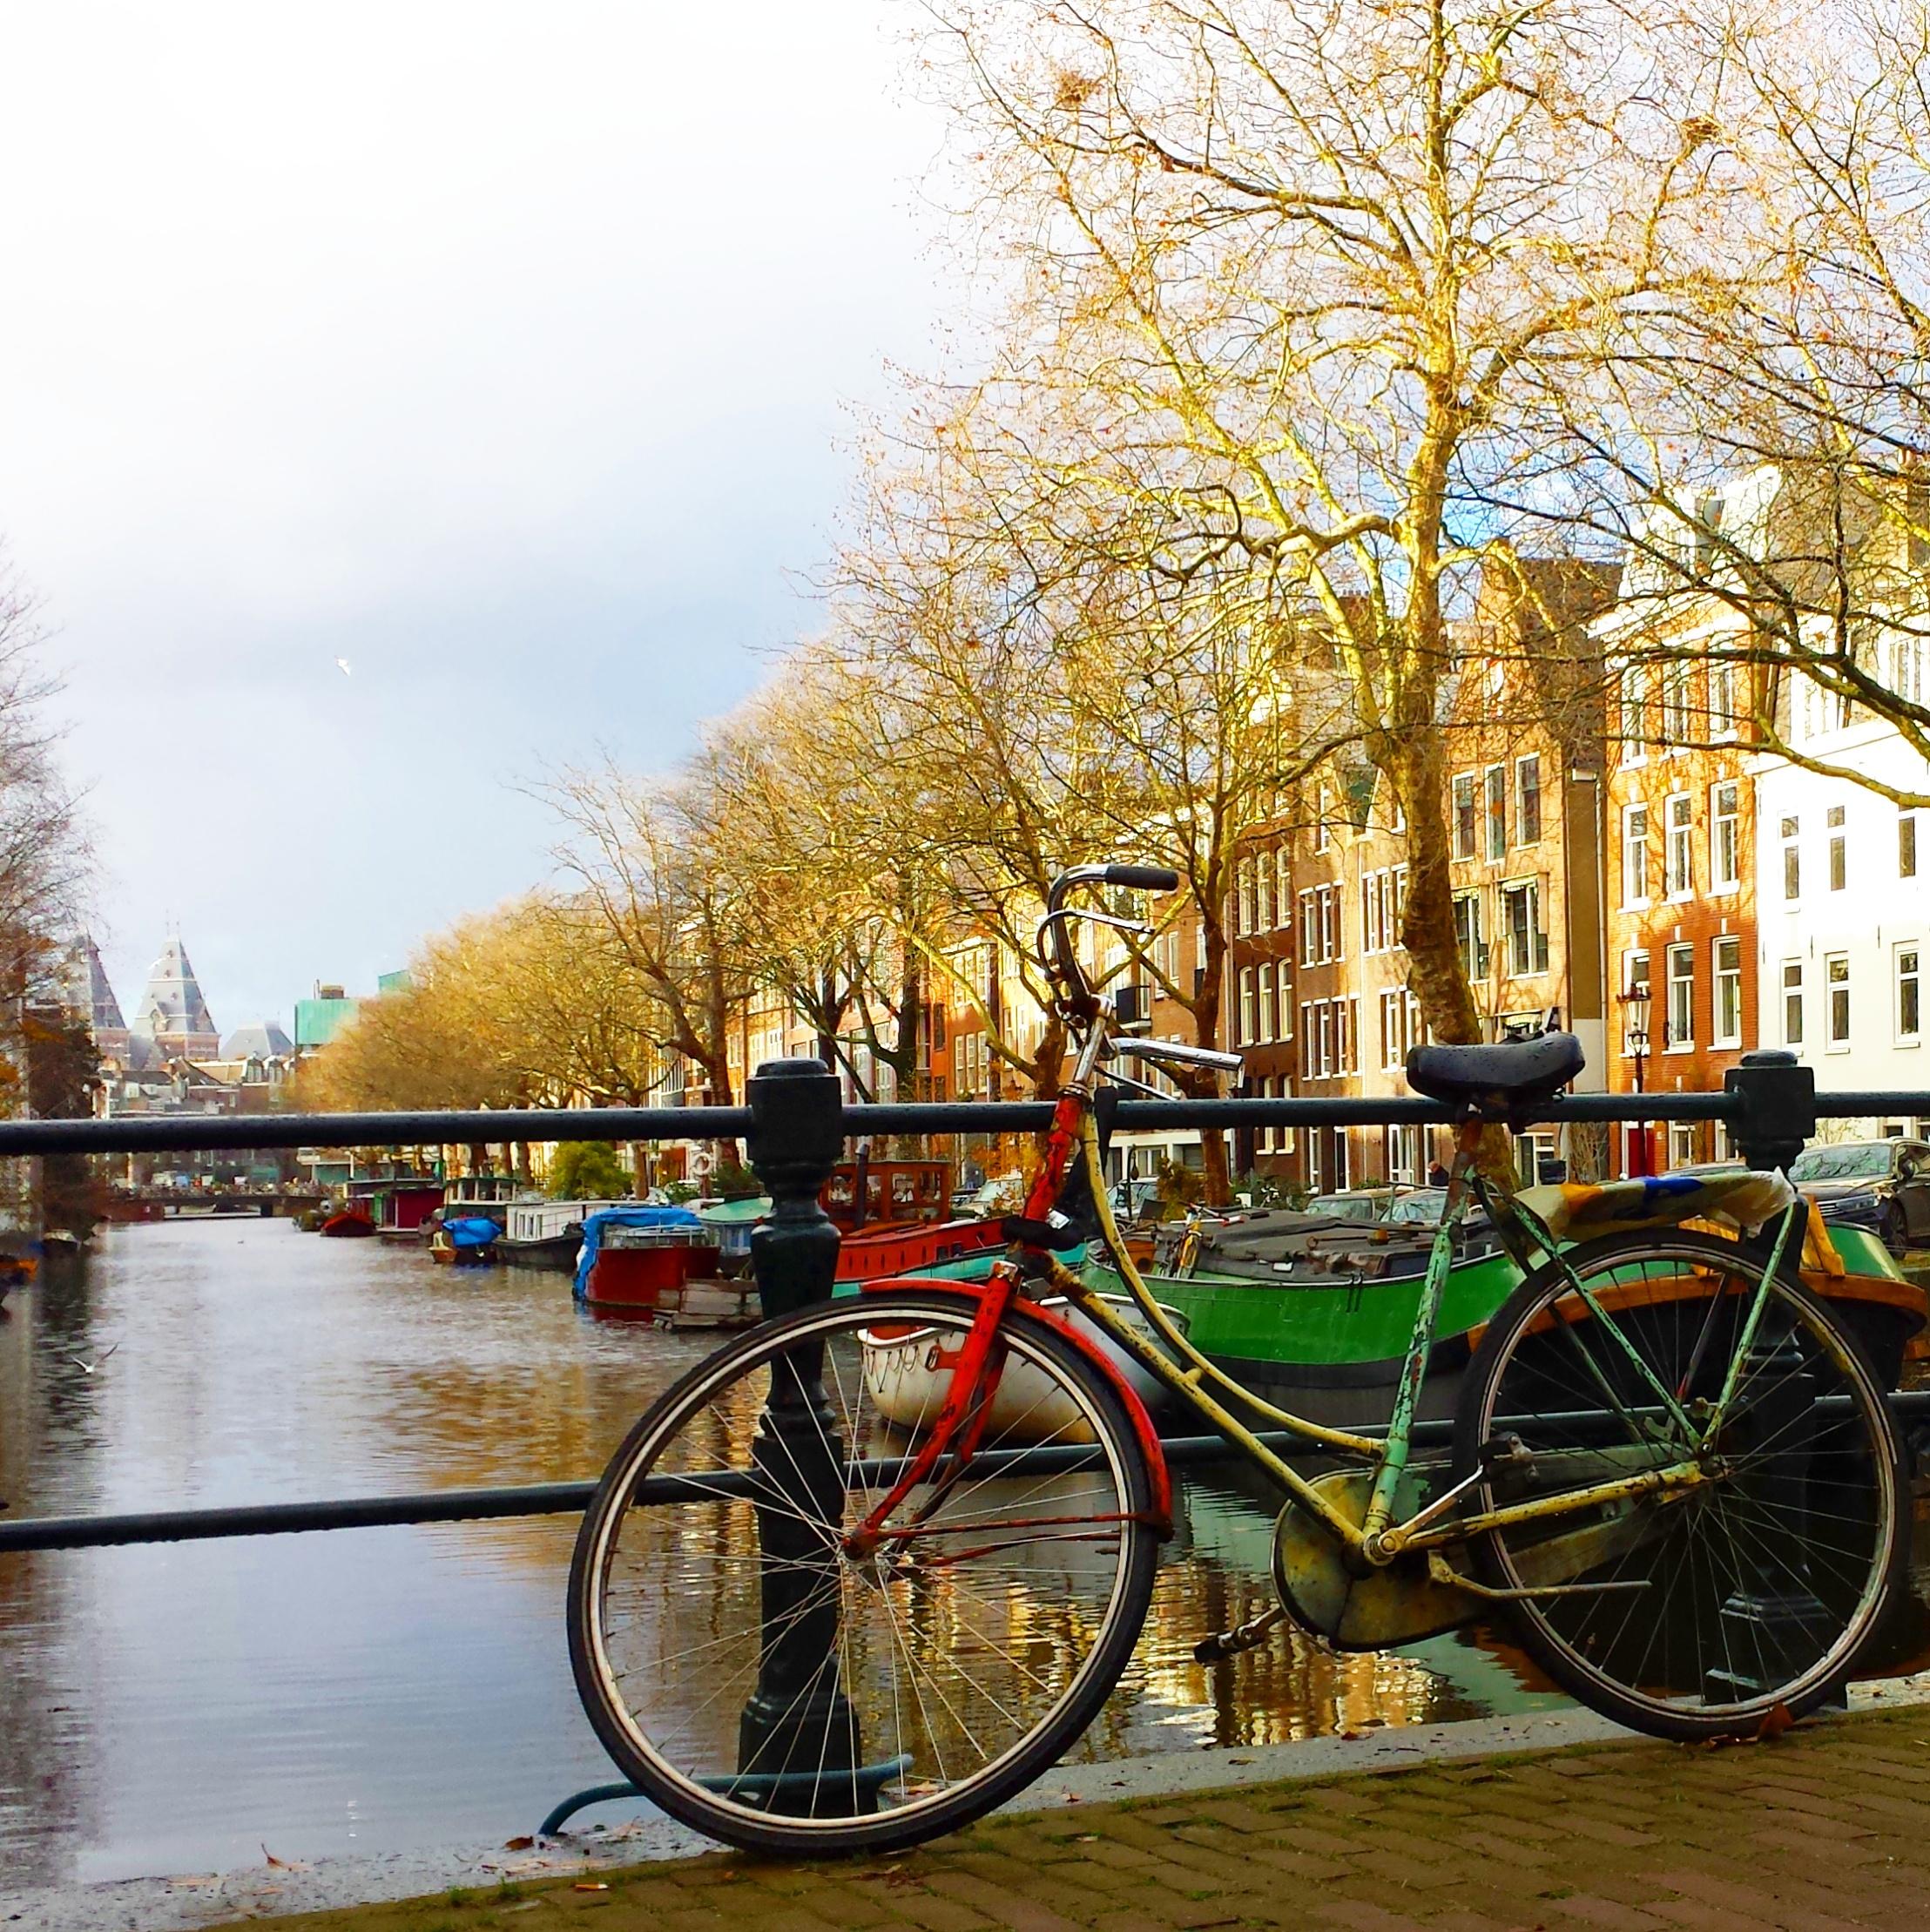 Amsterdam ist auch in der kalten Jahreszeit schööön 
#reisen #reise #amsterdam #fahrrad #winter